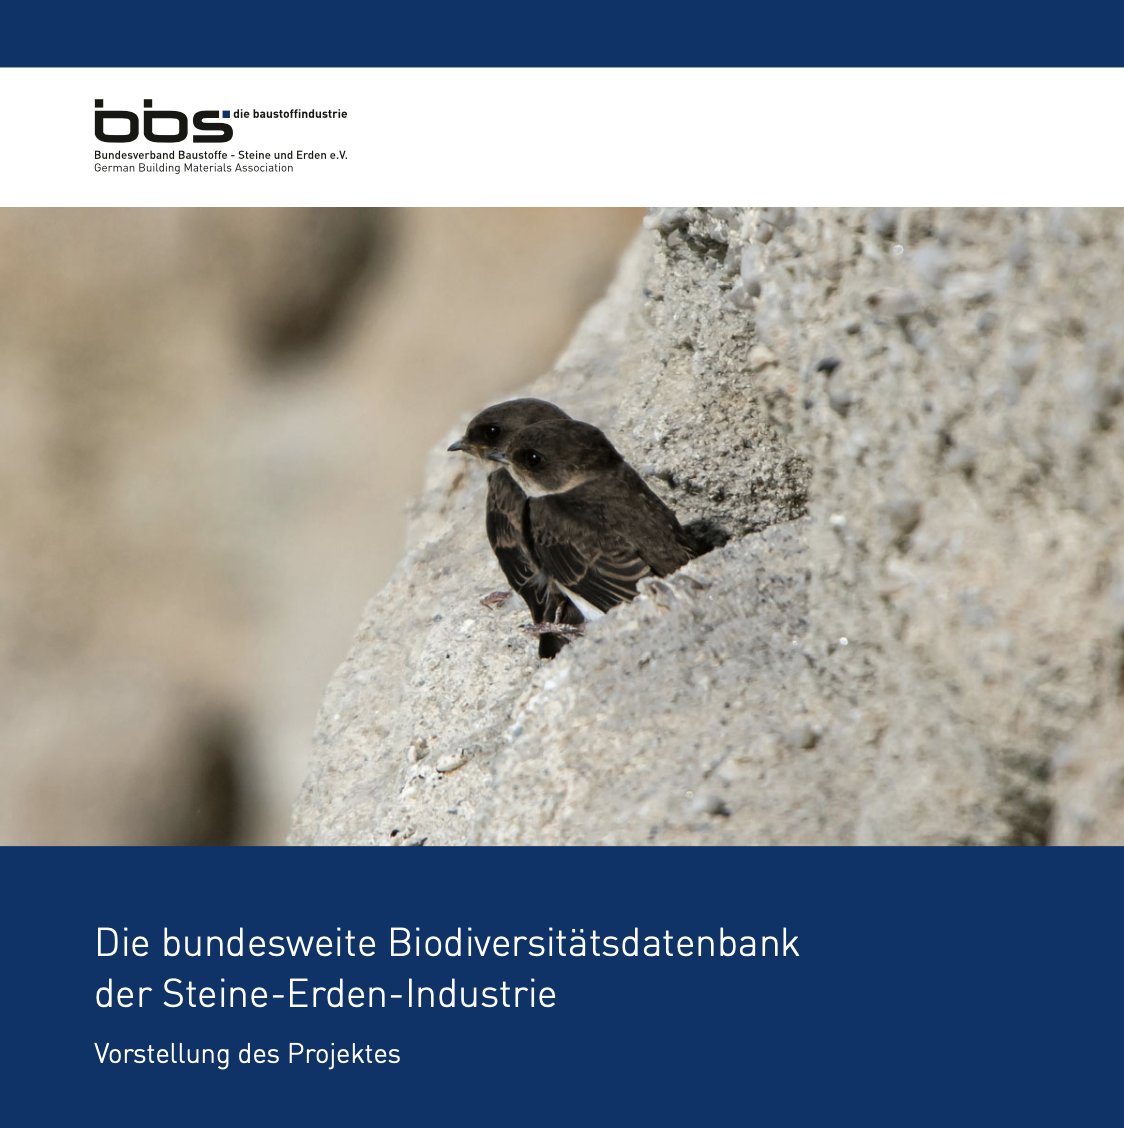 Broschüre BBS Biodiversitätsdatenbank